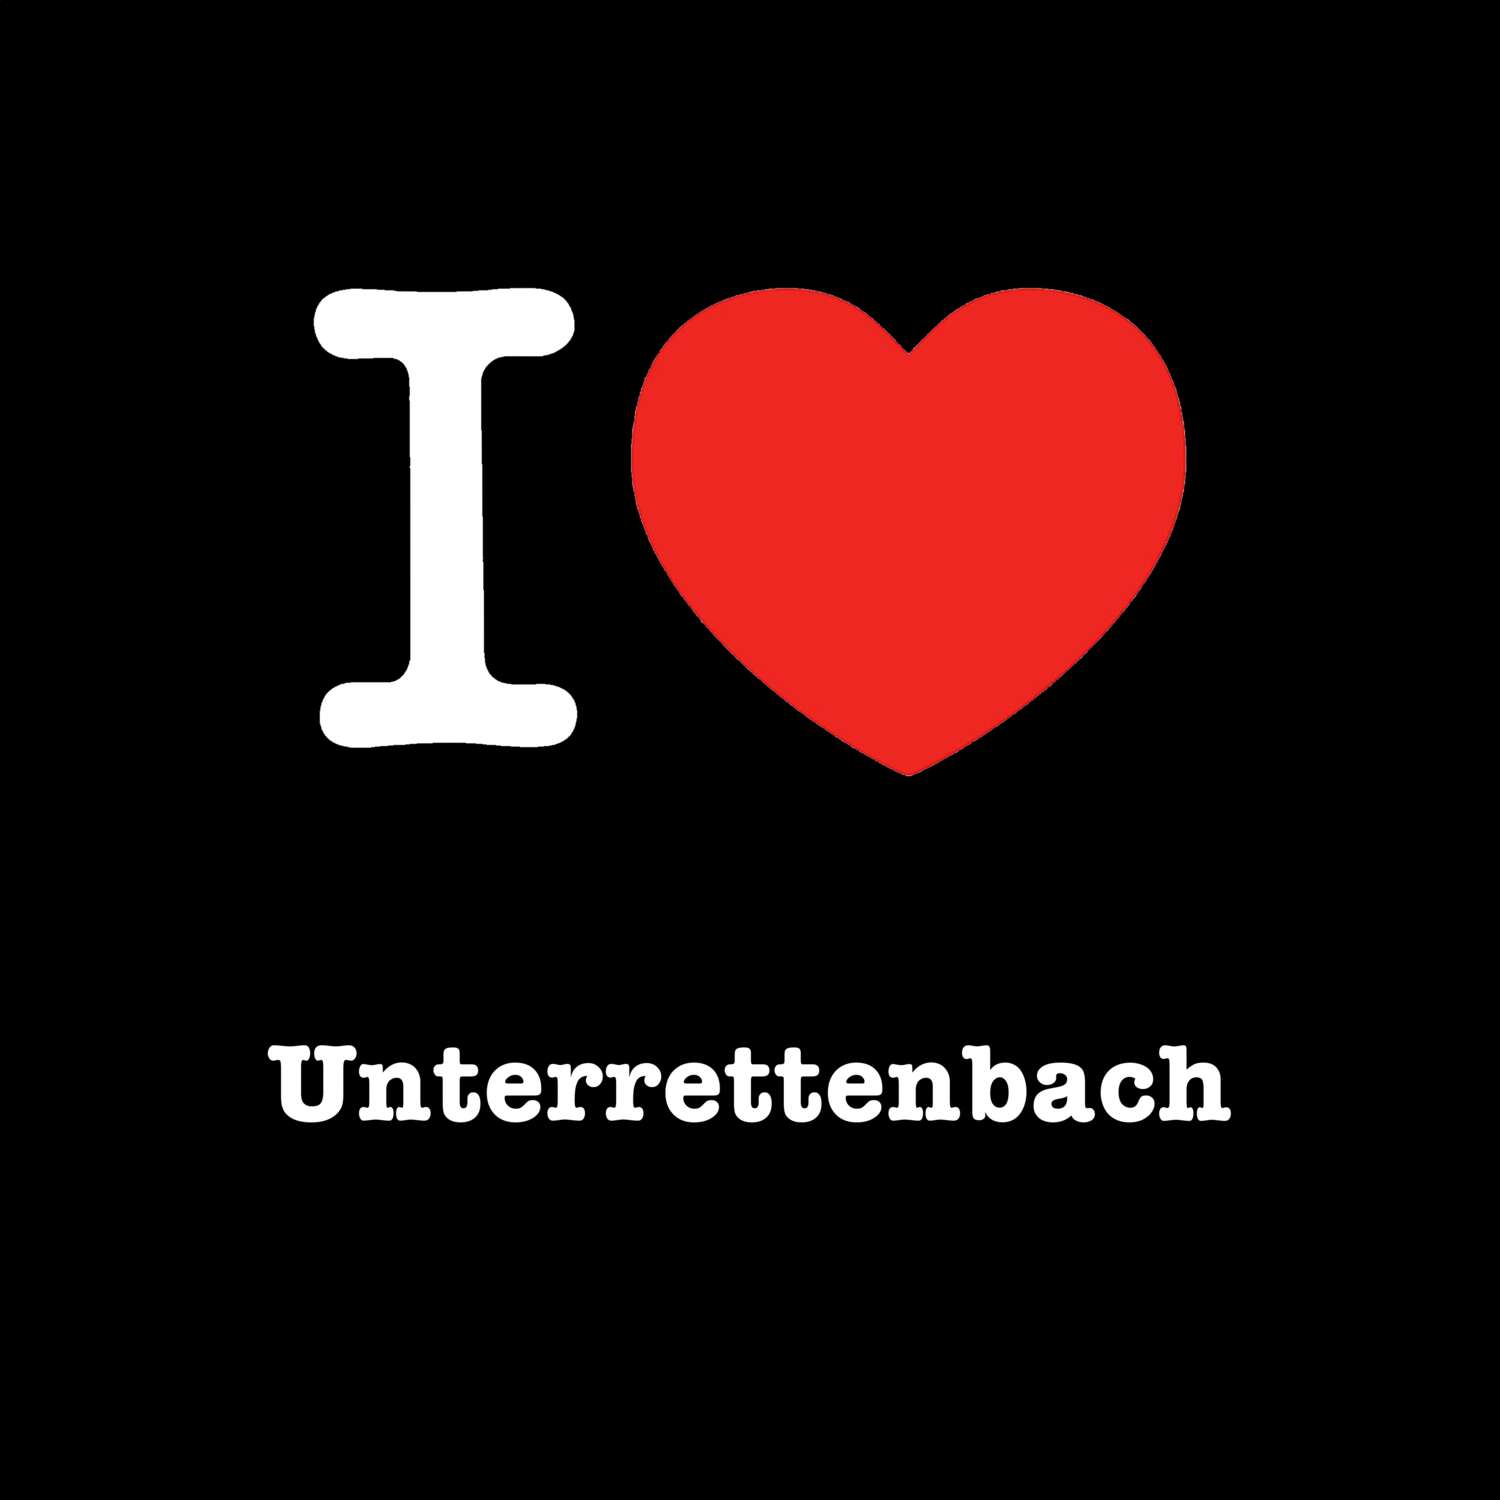 Unterrettenbach T-Shirt »I love«